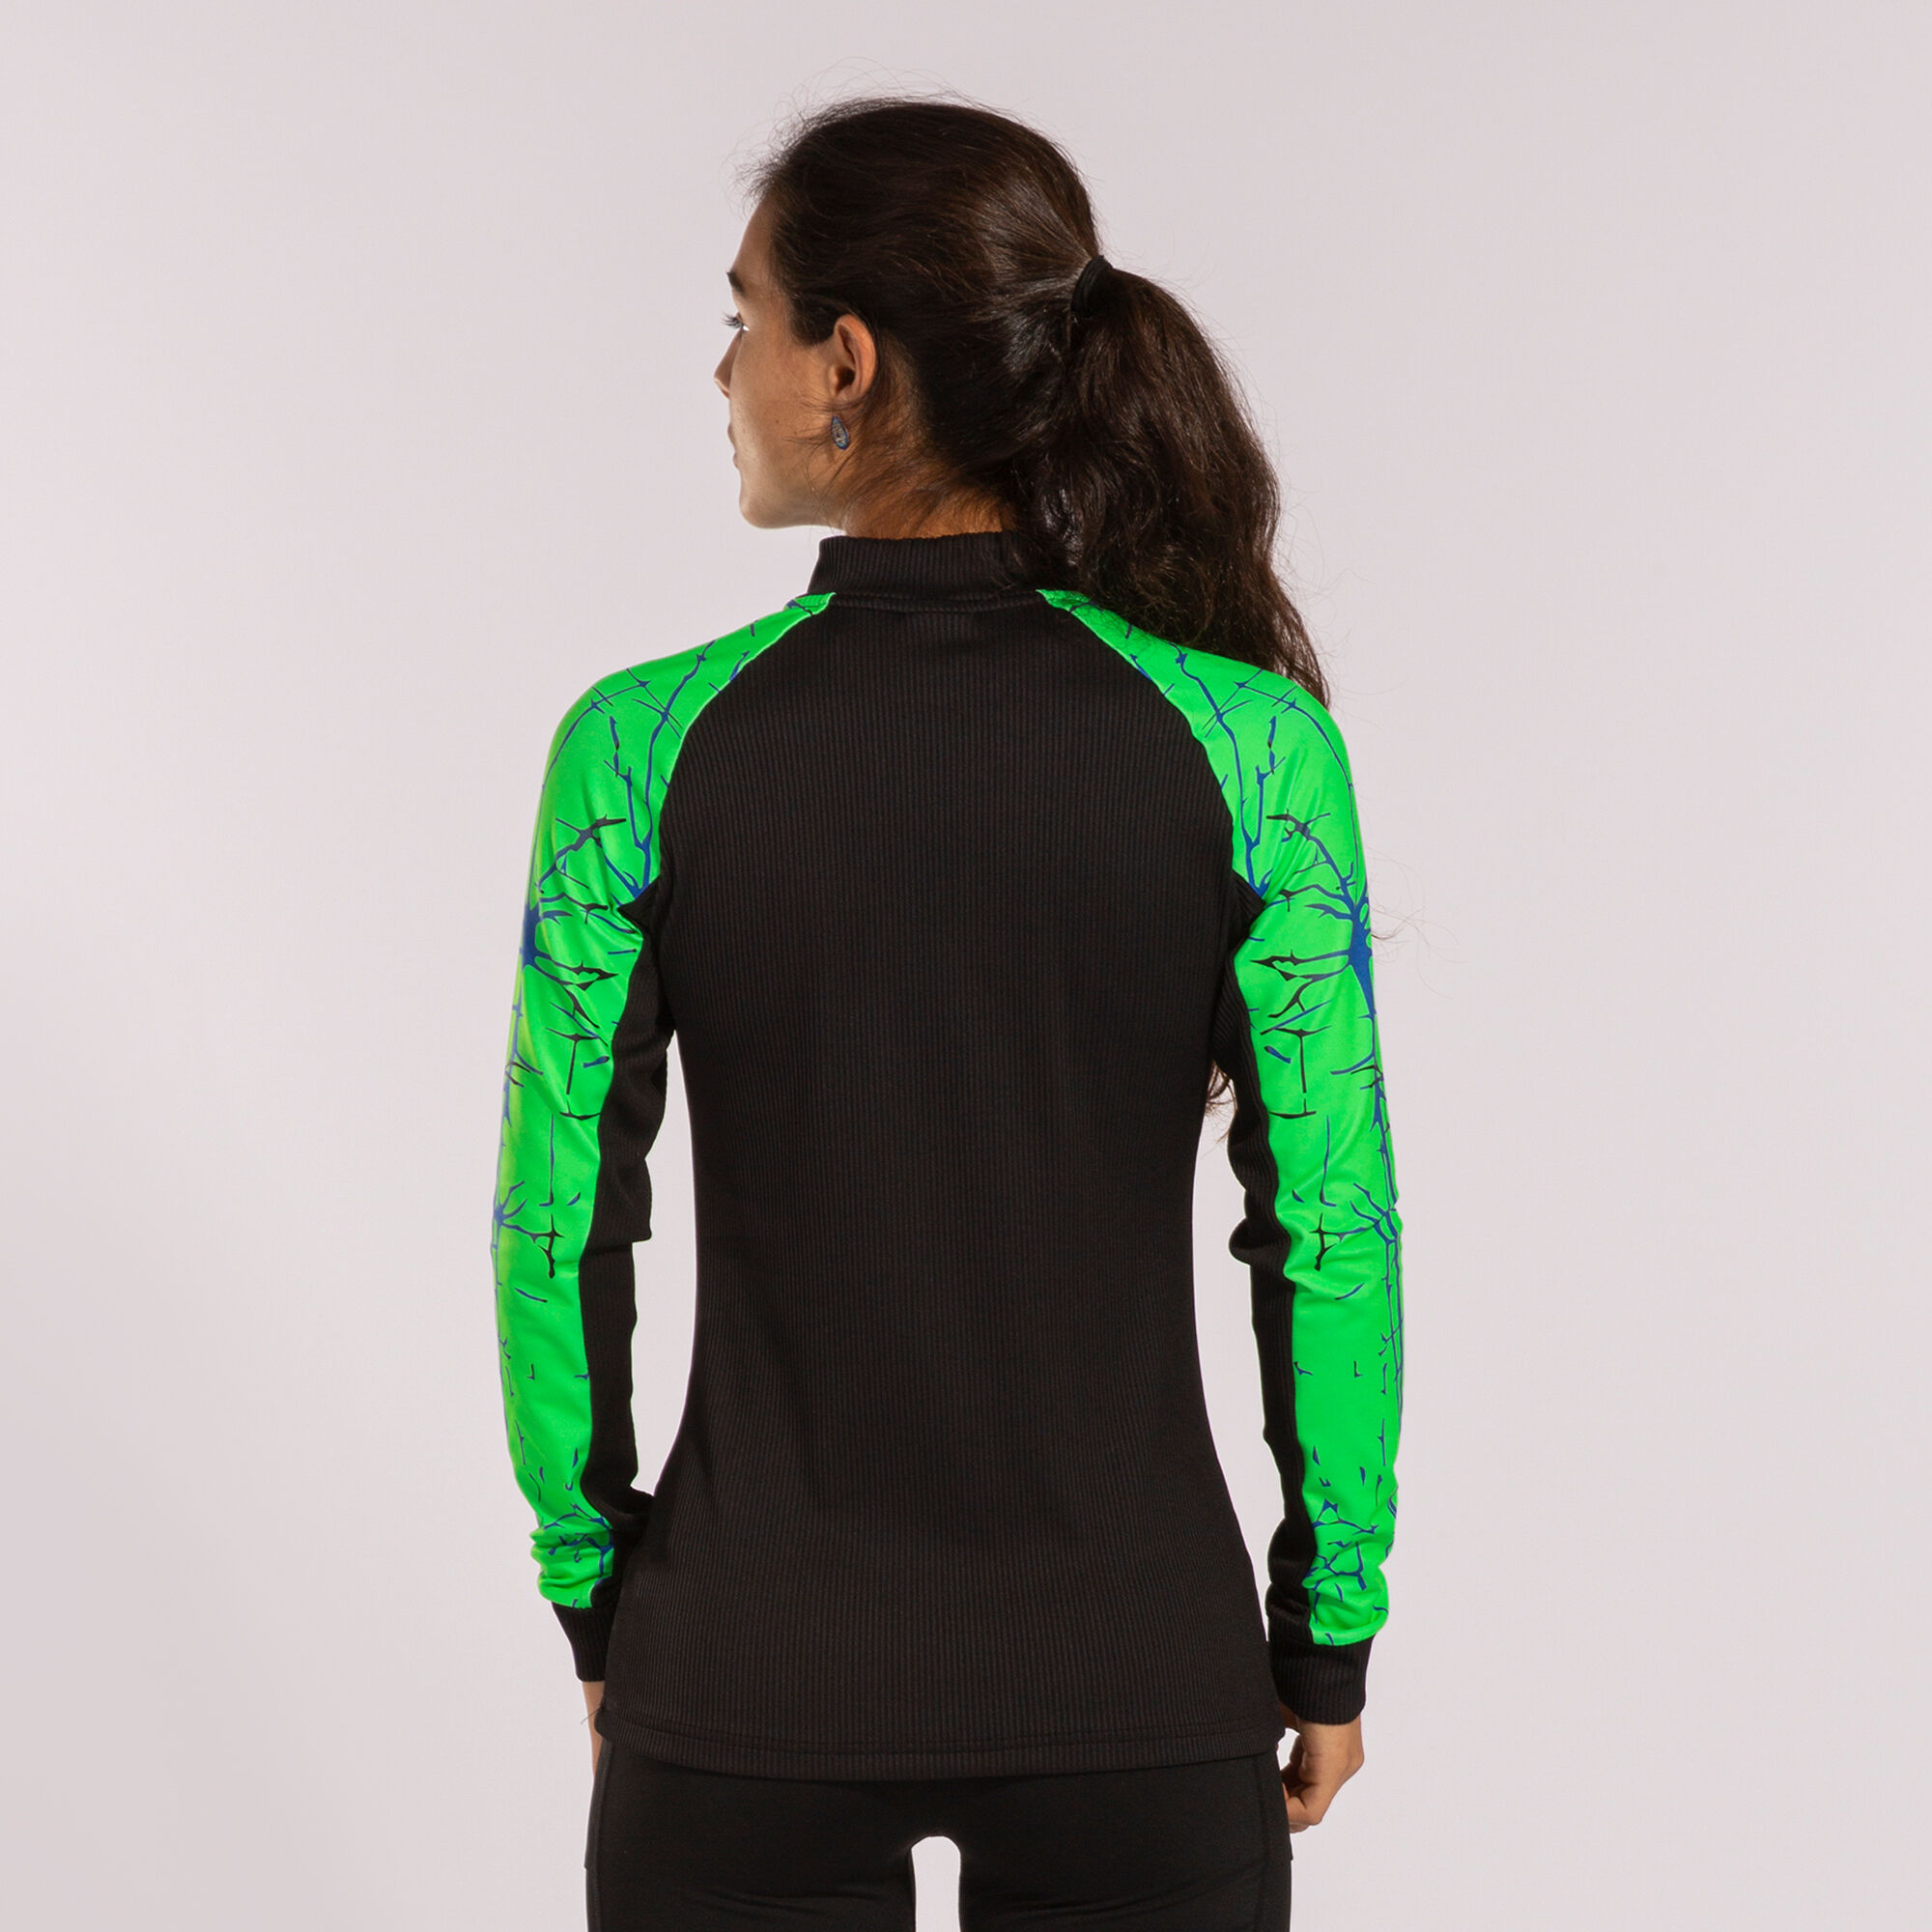 Sweat-shirt femme Elite IX noir vert fluo